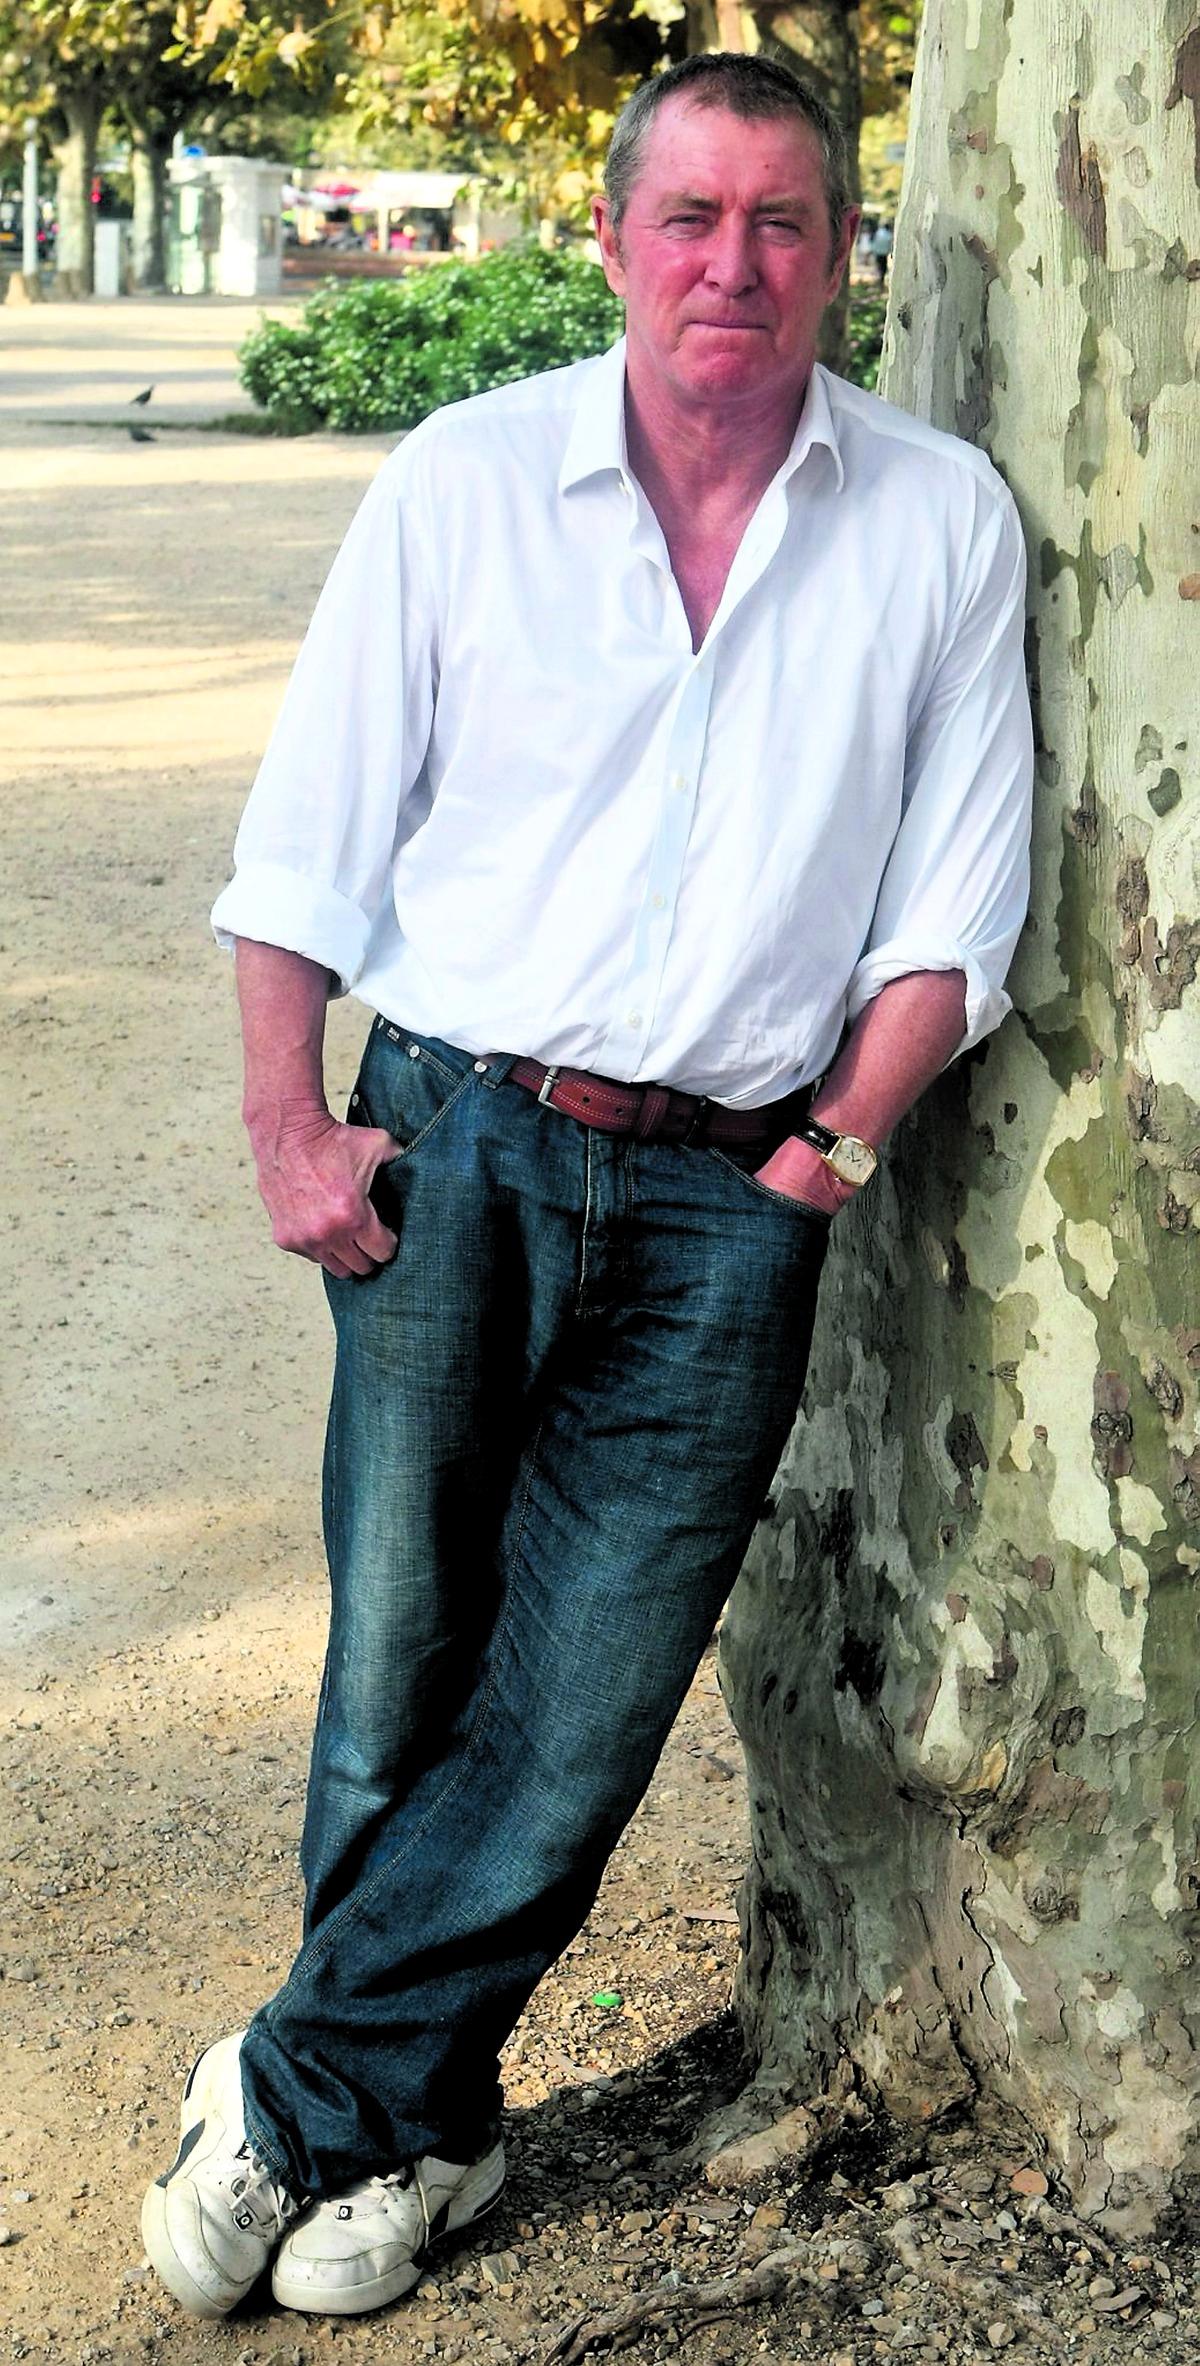 Rollen som Tom Barnaby har inte bara gjort John Nettles till kriminalhjälte – utan även till sexsymbol. Men själv är han skeptisk. ”Då och då, efter en fin flaska Beaujolais kan jag kanske känna mig sexig, men i verkliga livet är jag ett slitet åbäke”, säger han.